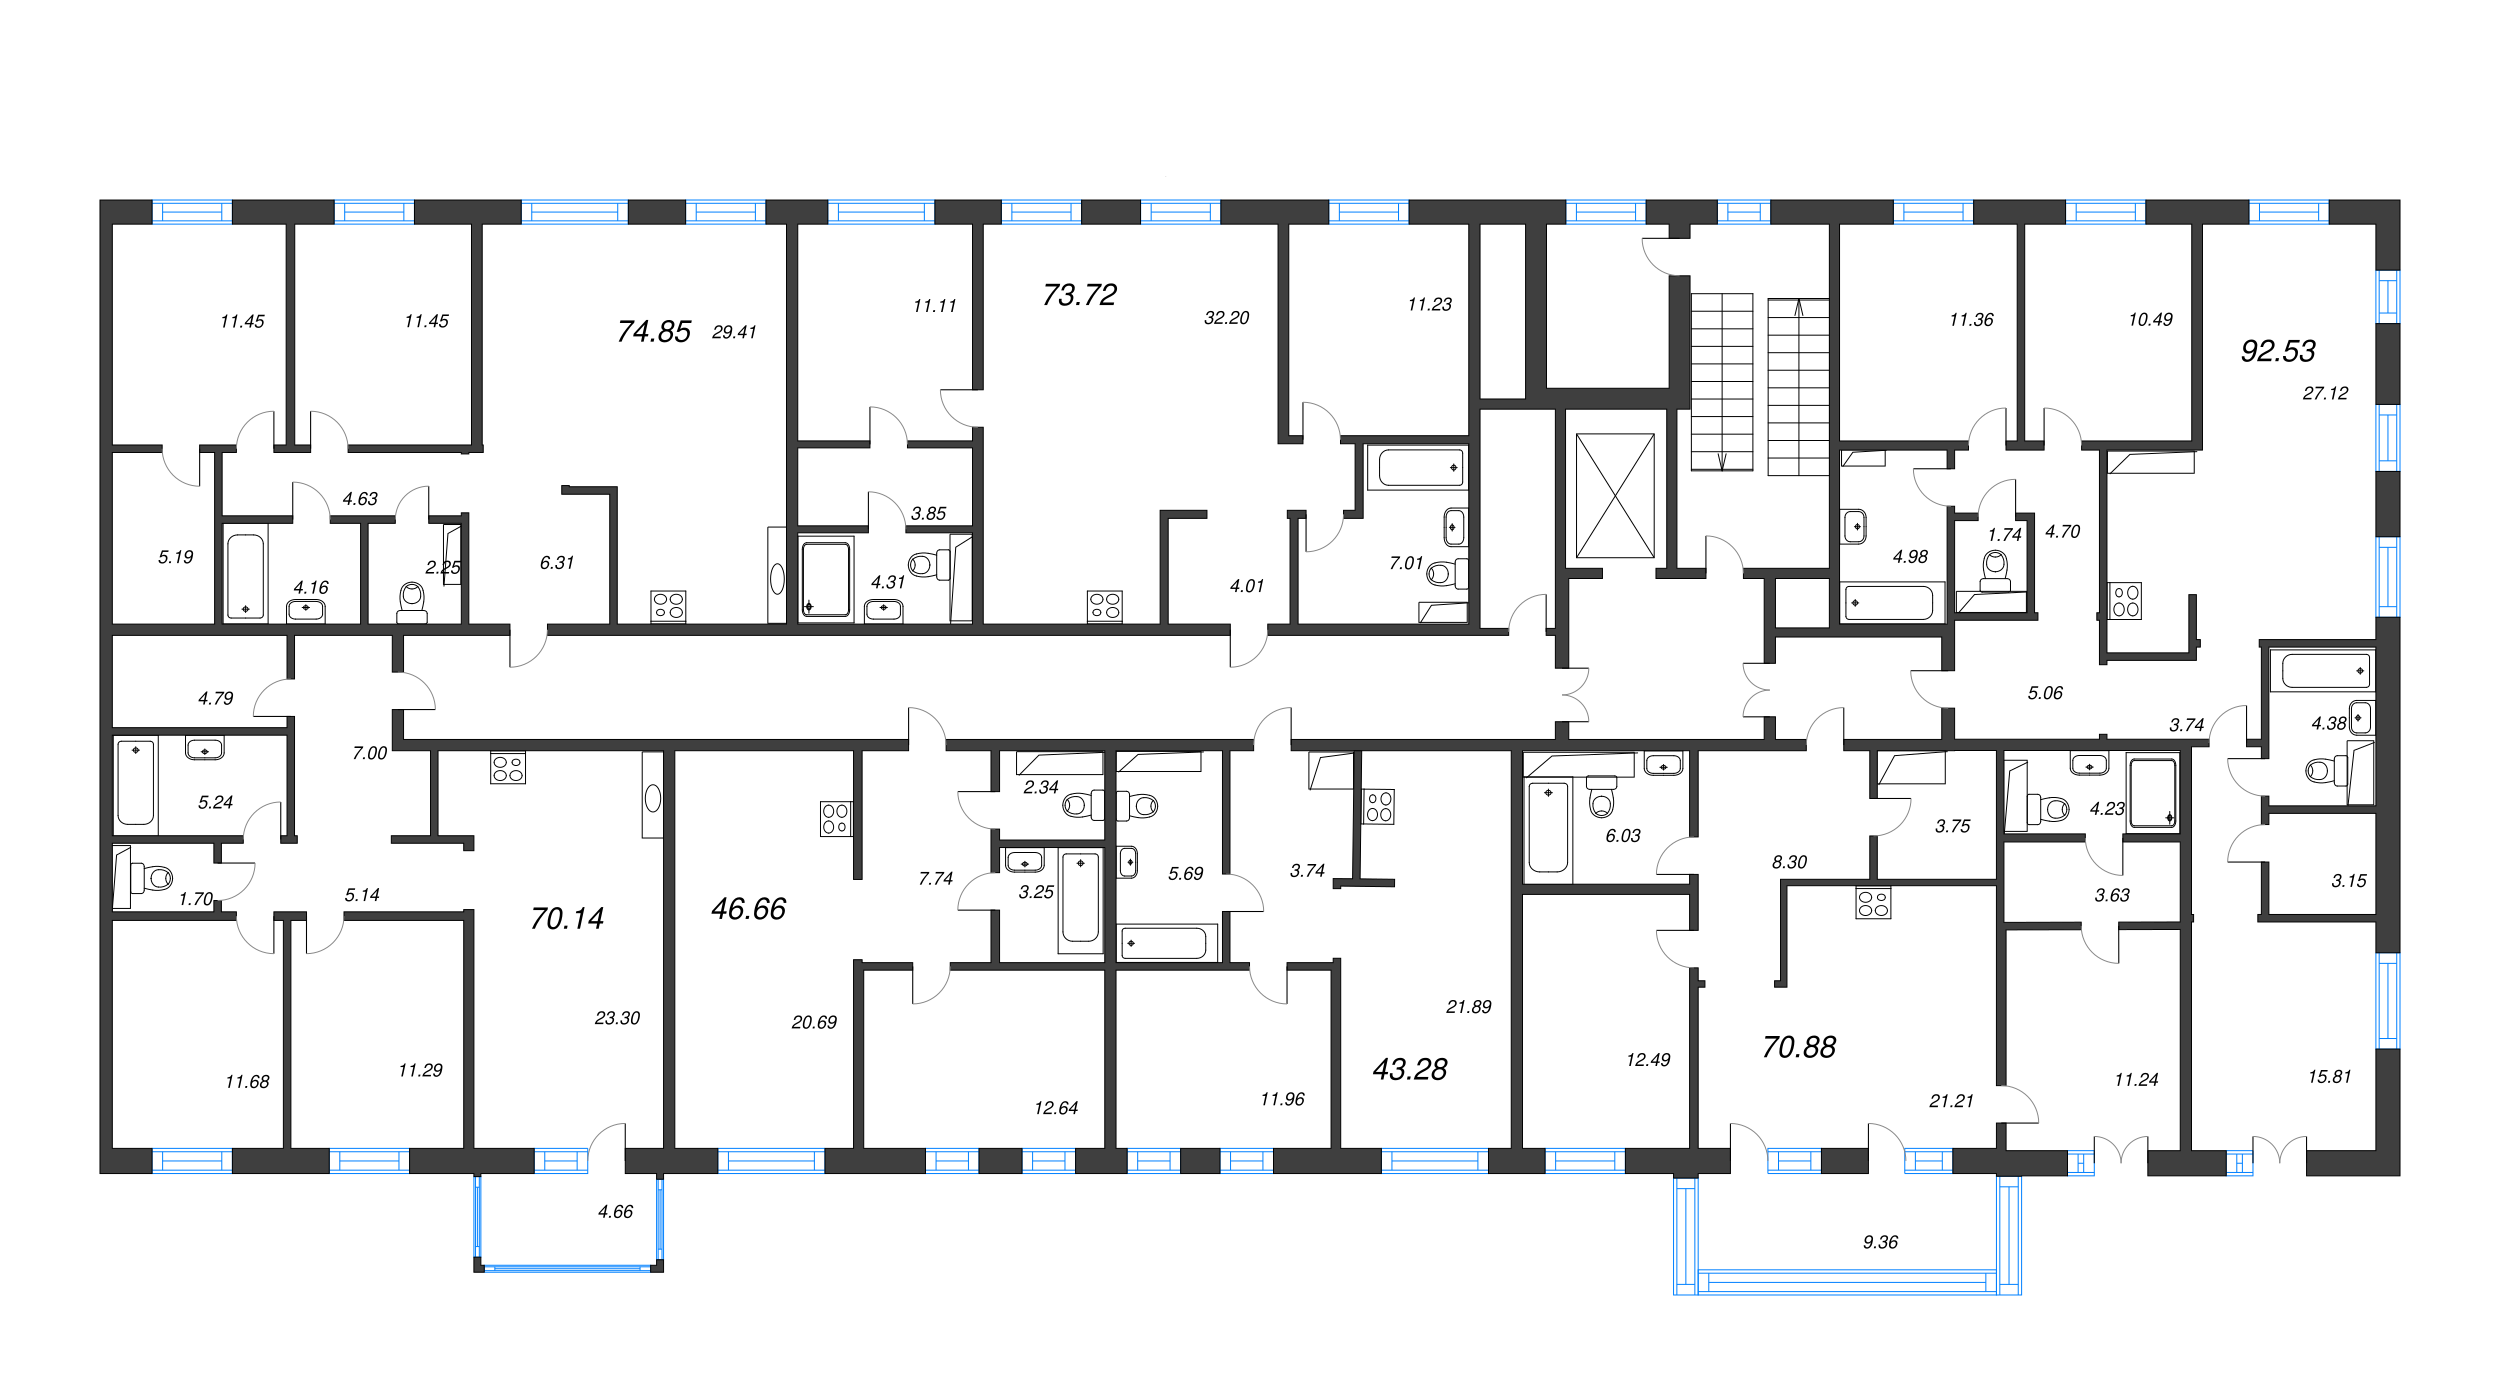 4-комнатная (Евро) квартира, 92.53 м² в ЖК "Черная речка, 41" - планировка этажа